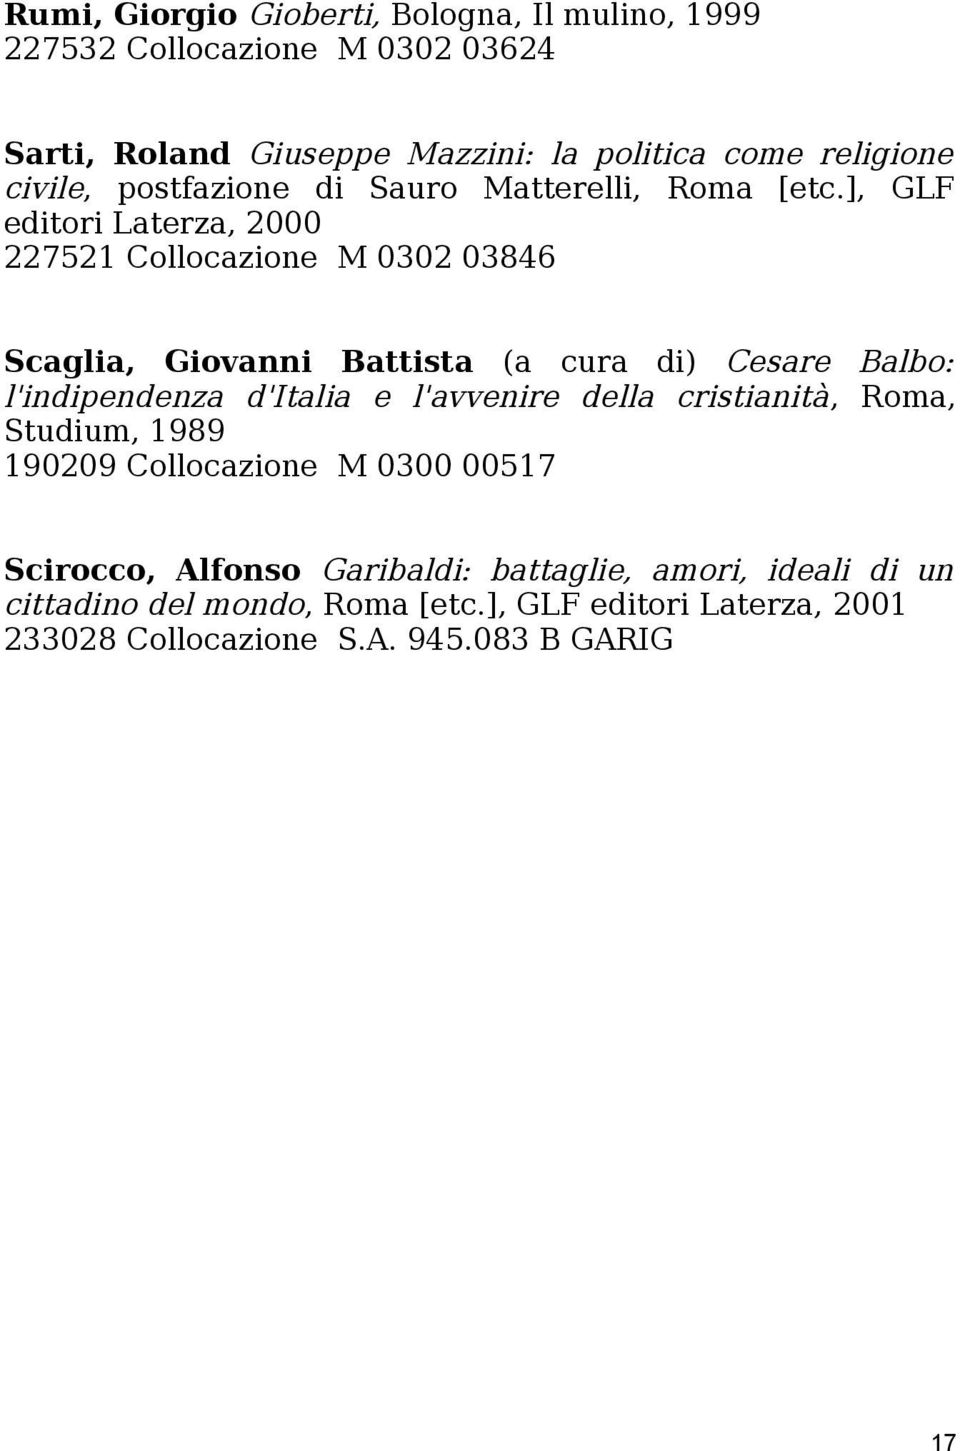 ], GLF editori Laterza, 2000 227521 Collocazione M 0302 03846 Scaglia, Giovanni Battista (a cura di) Cesare Balbo: l'indipendenza d'italia e